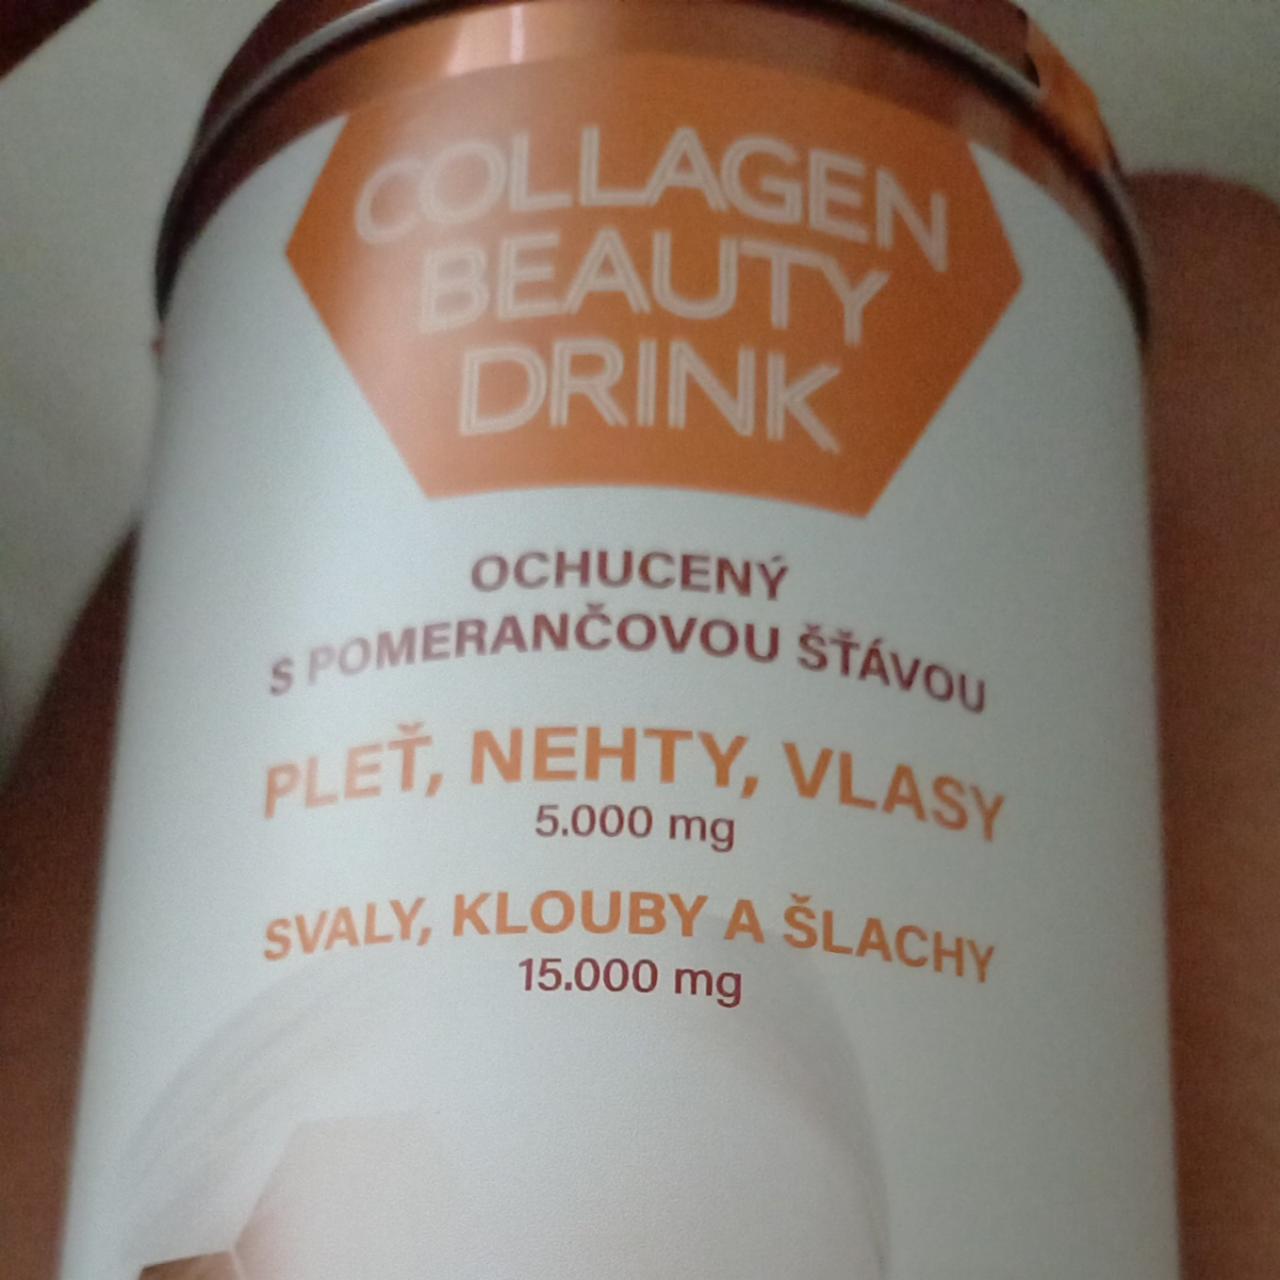 Fotografie - Collagen Beauty drink